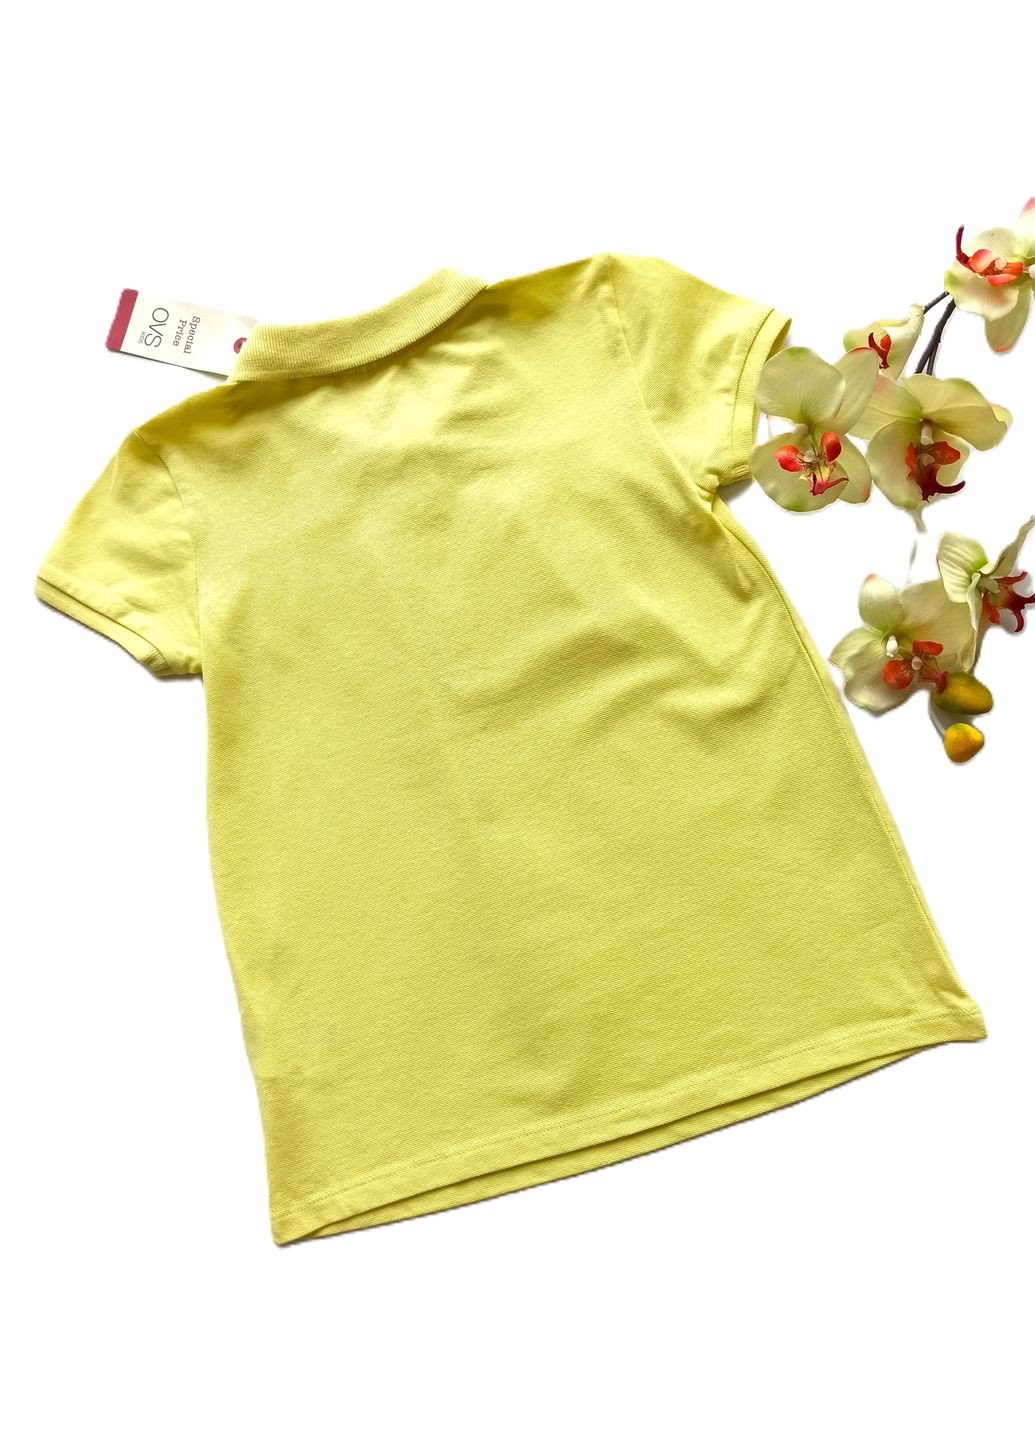 Желтая летняя футболка-поло для девочки желтая OVS